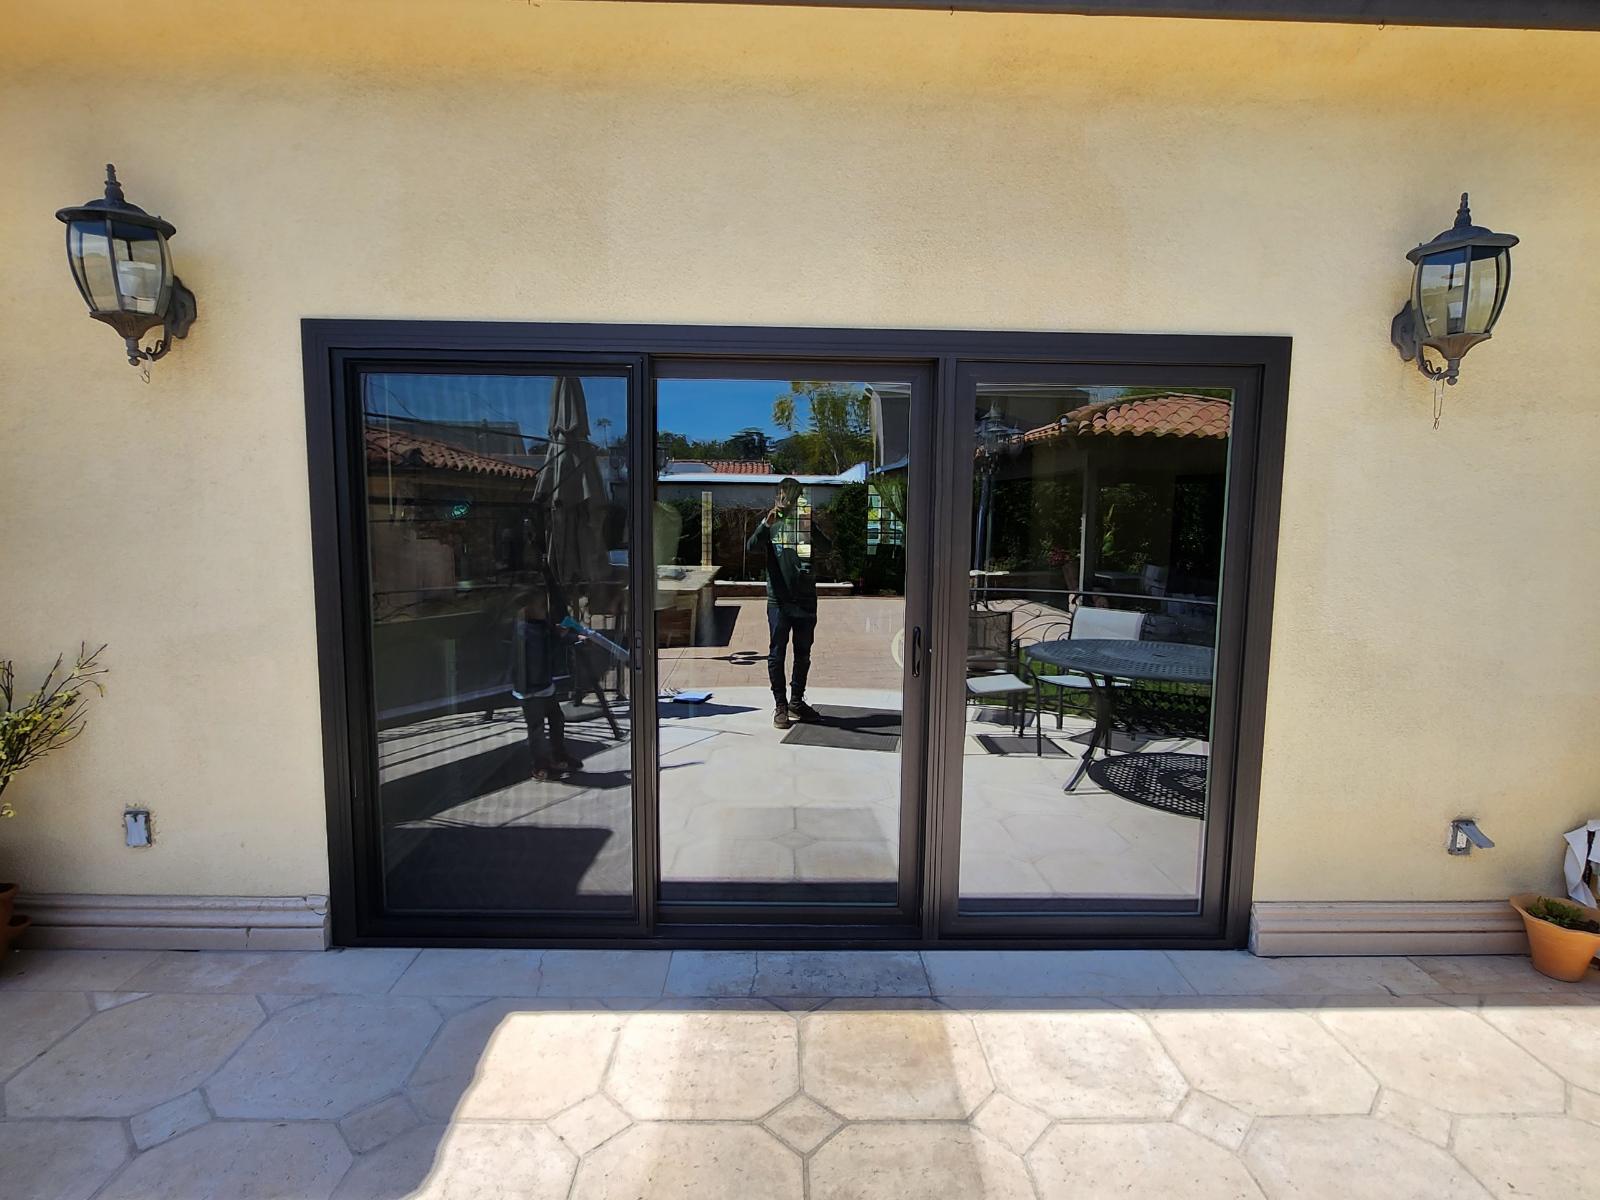 Three-Panel Patio Door Replacement in Santa Monica, CA